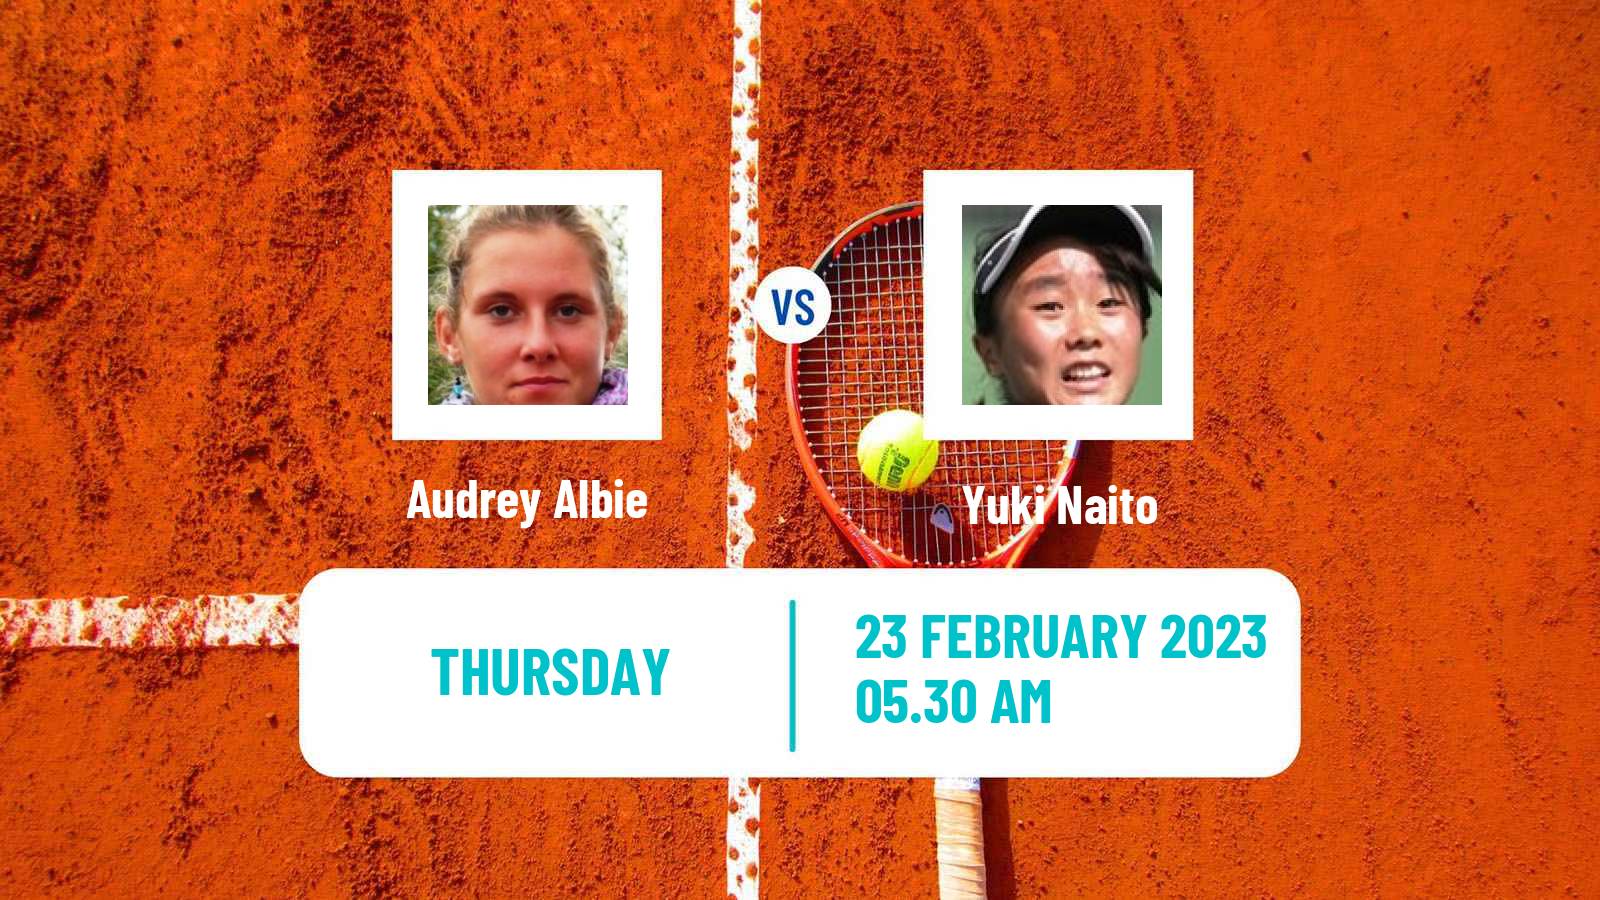 Tennis ITF Tournaments Audrey Albie - Yuki Naito